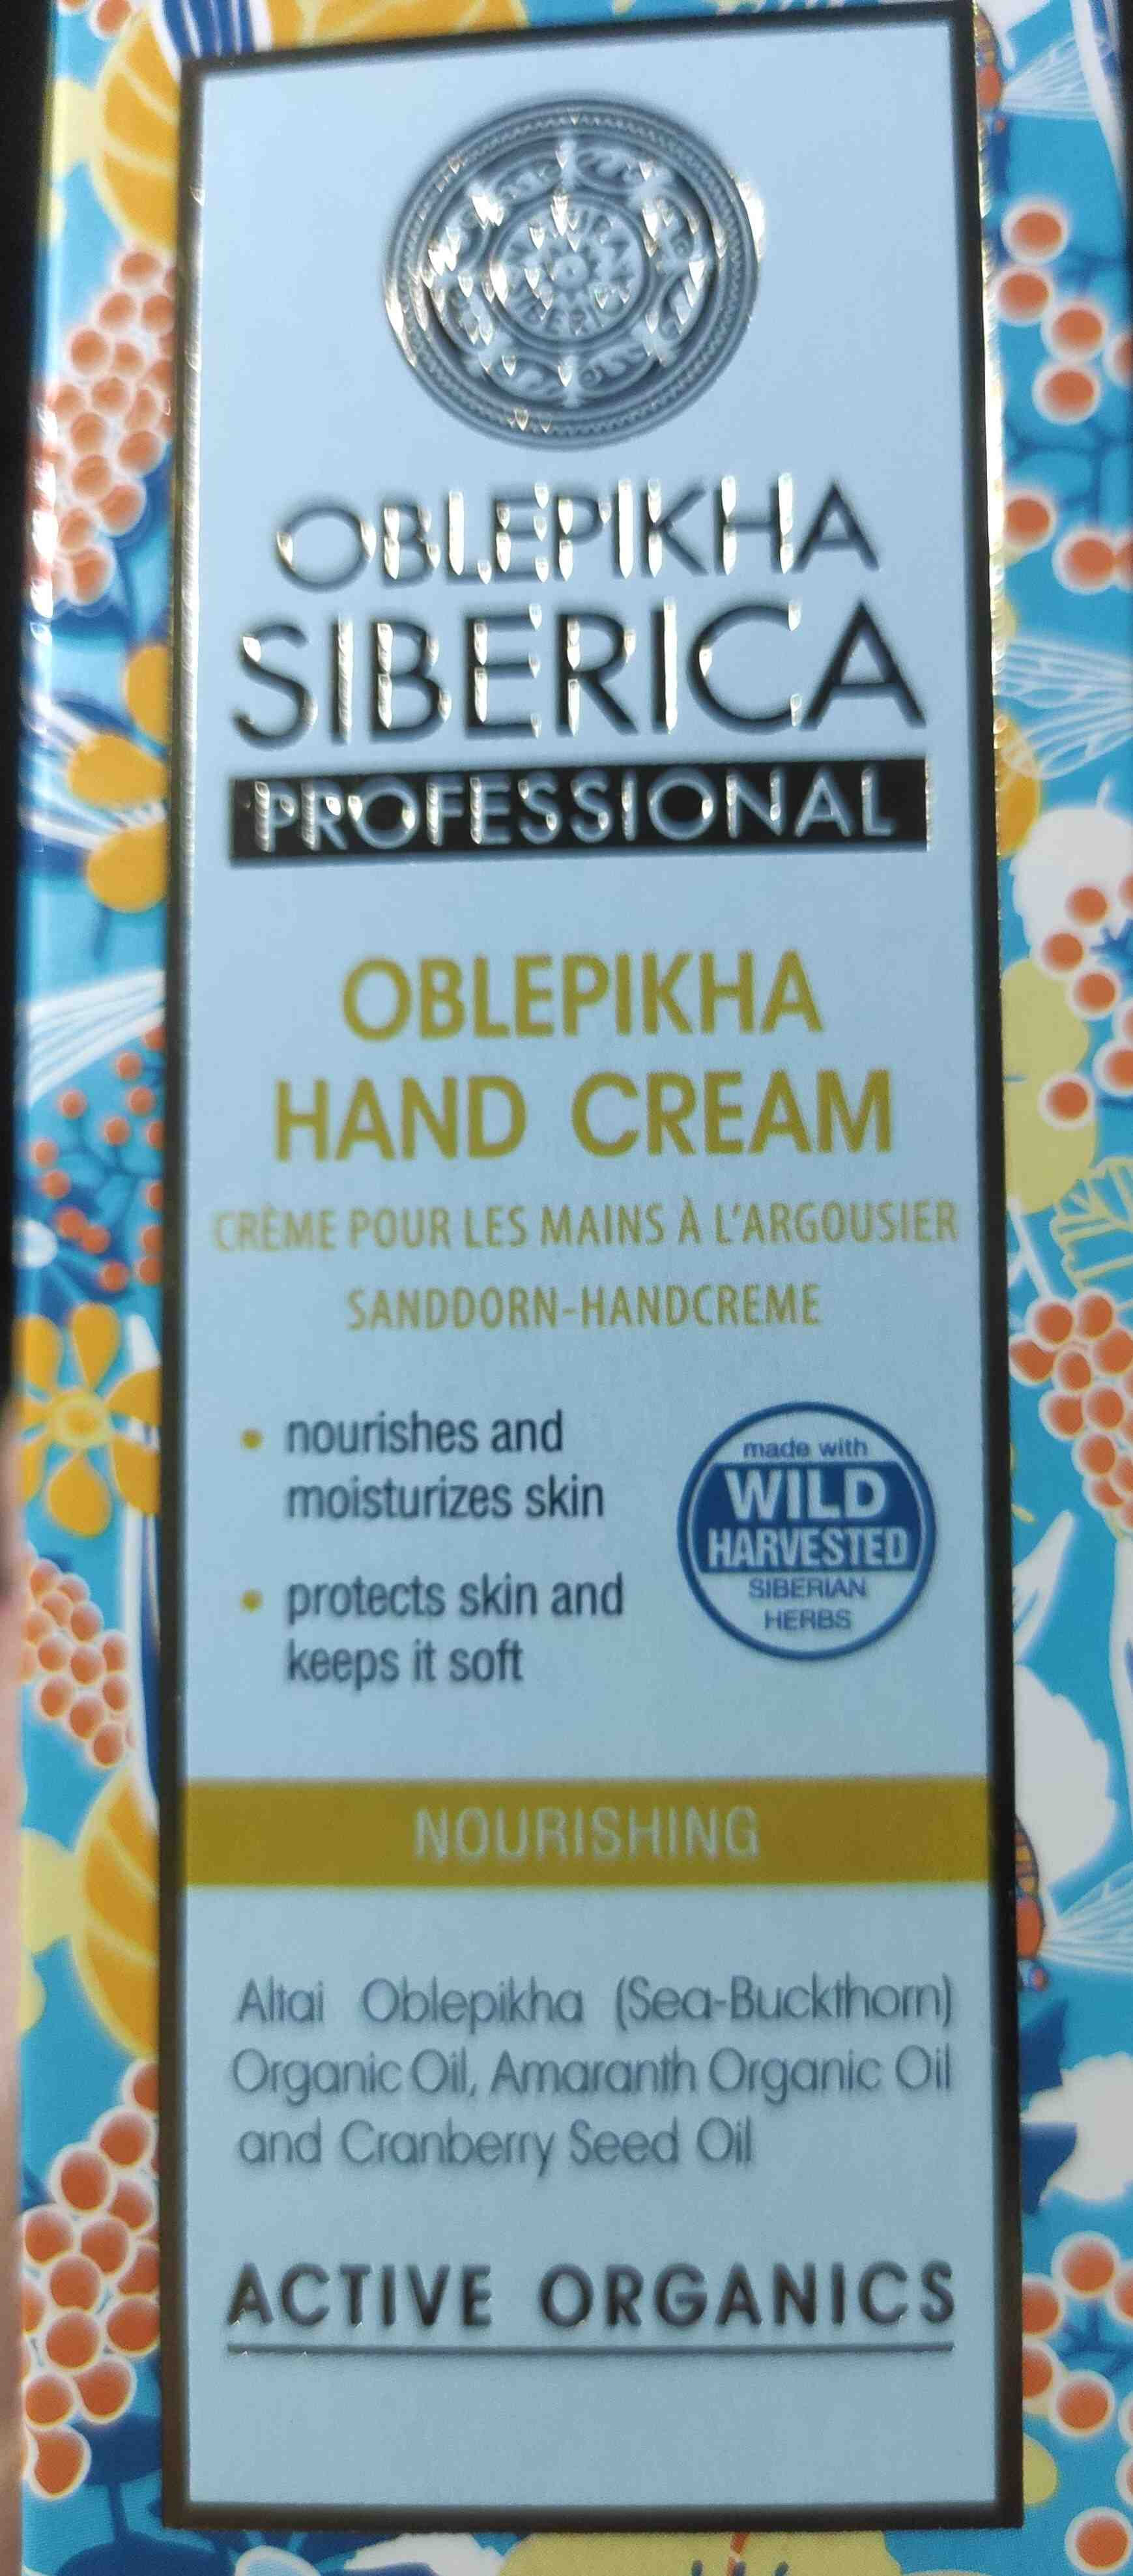 Oblekpikha Hand Cream - Produkt - en